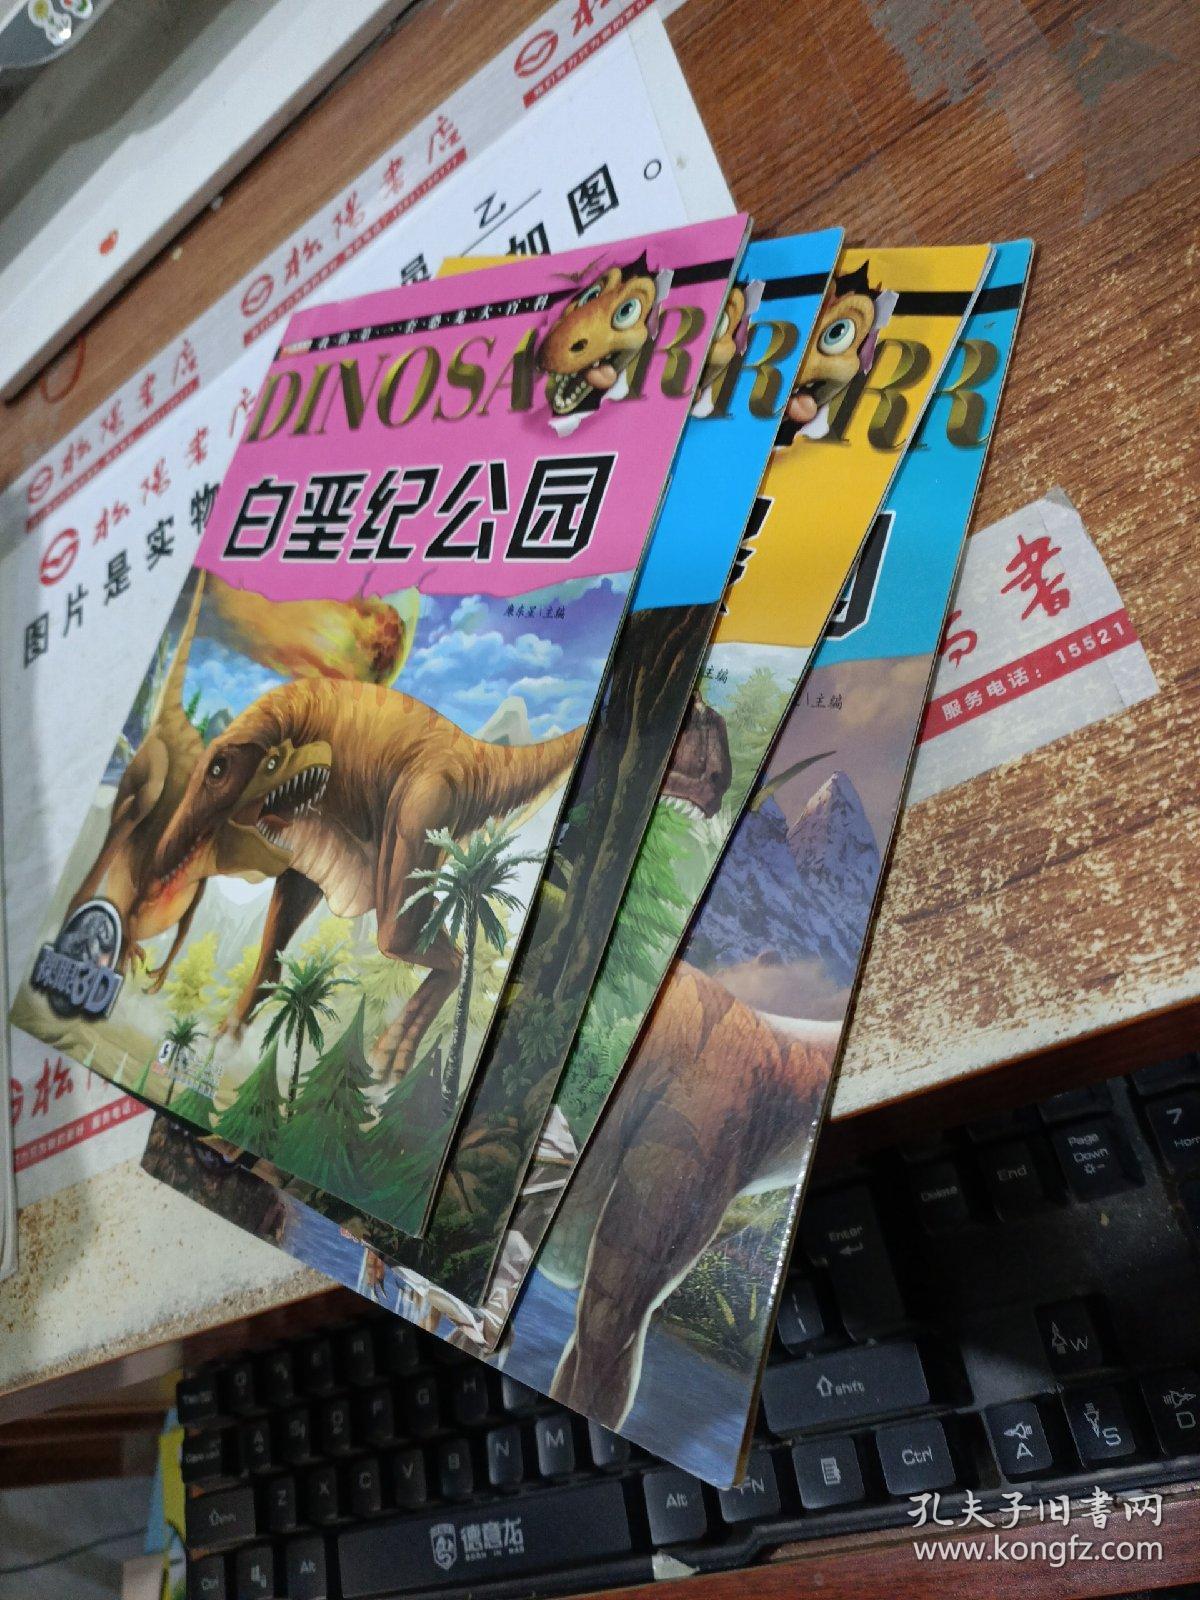 我的第一套恐龙大百科 恐龙公园 恐龙之最  三叠纪公园: 白垩纪公园 4本合售